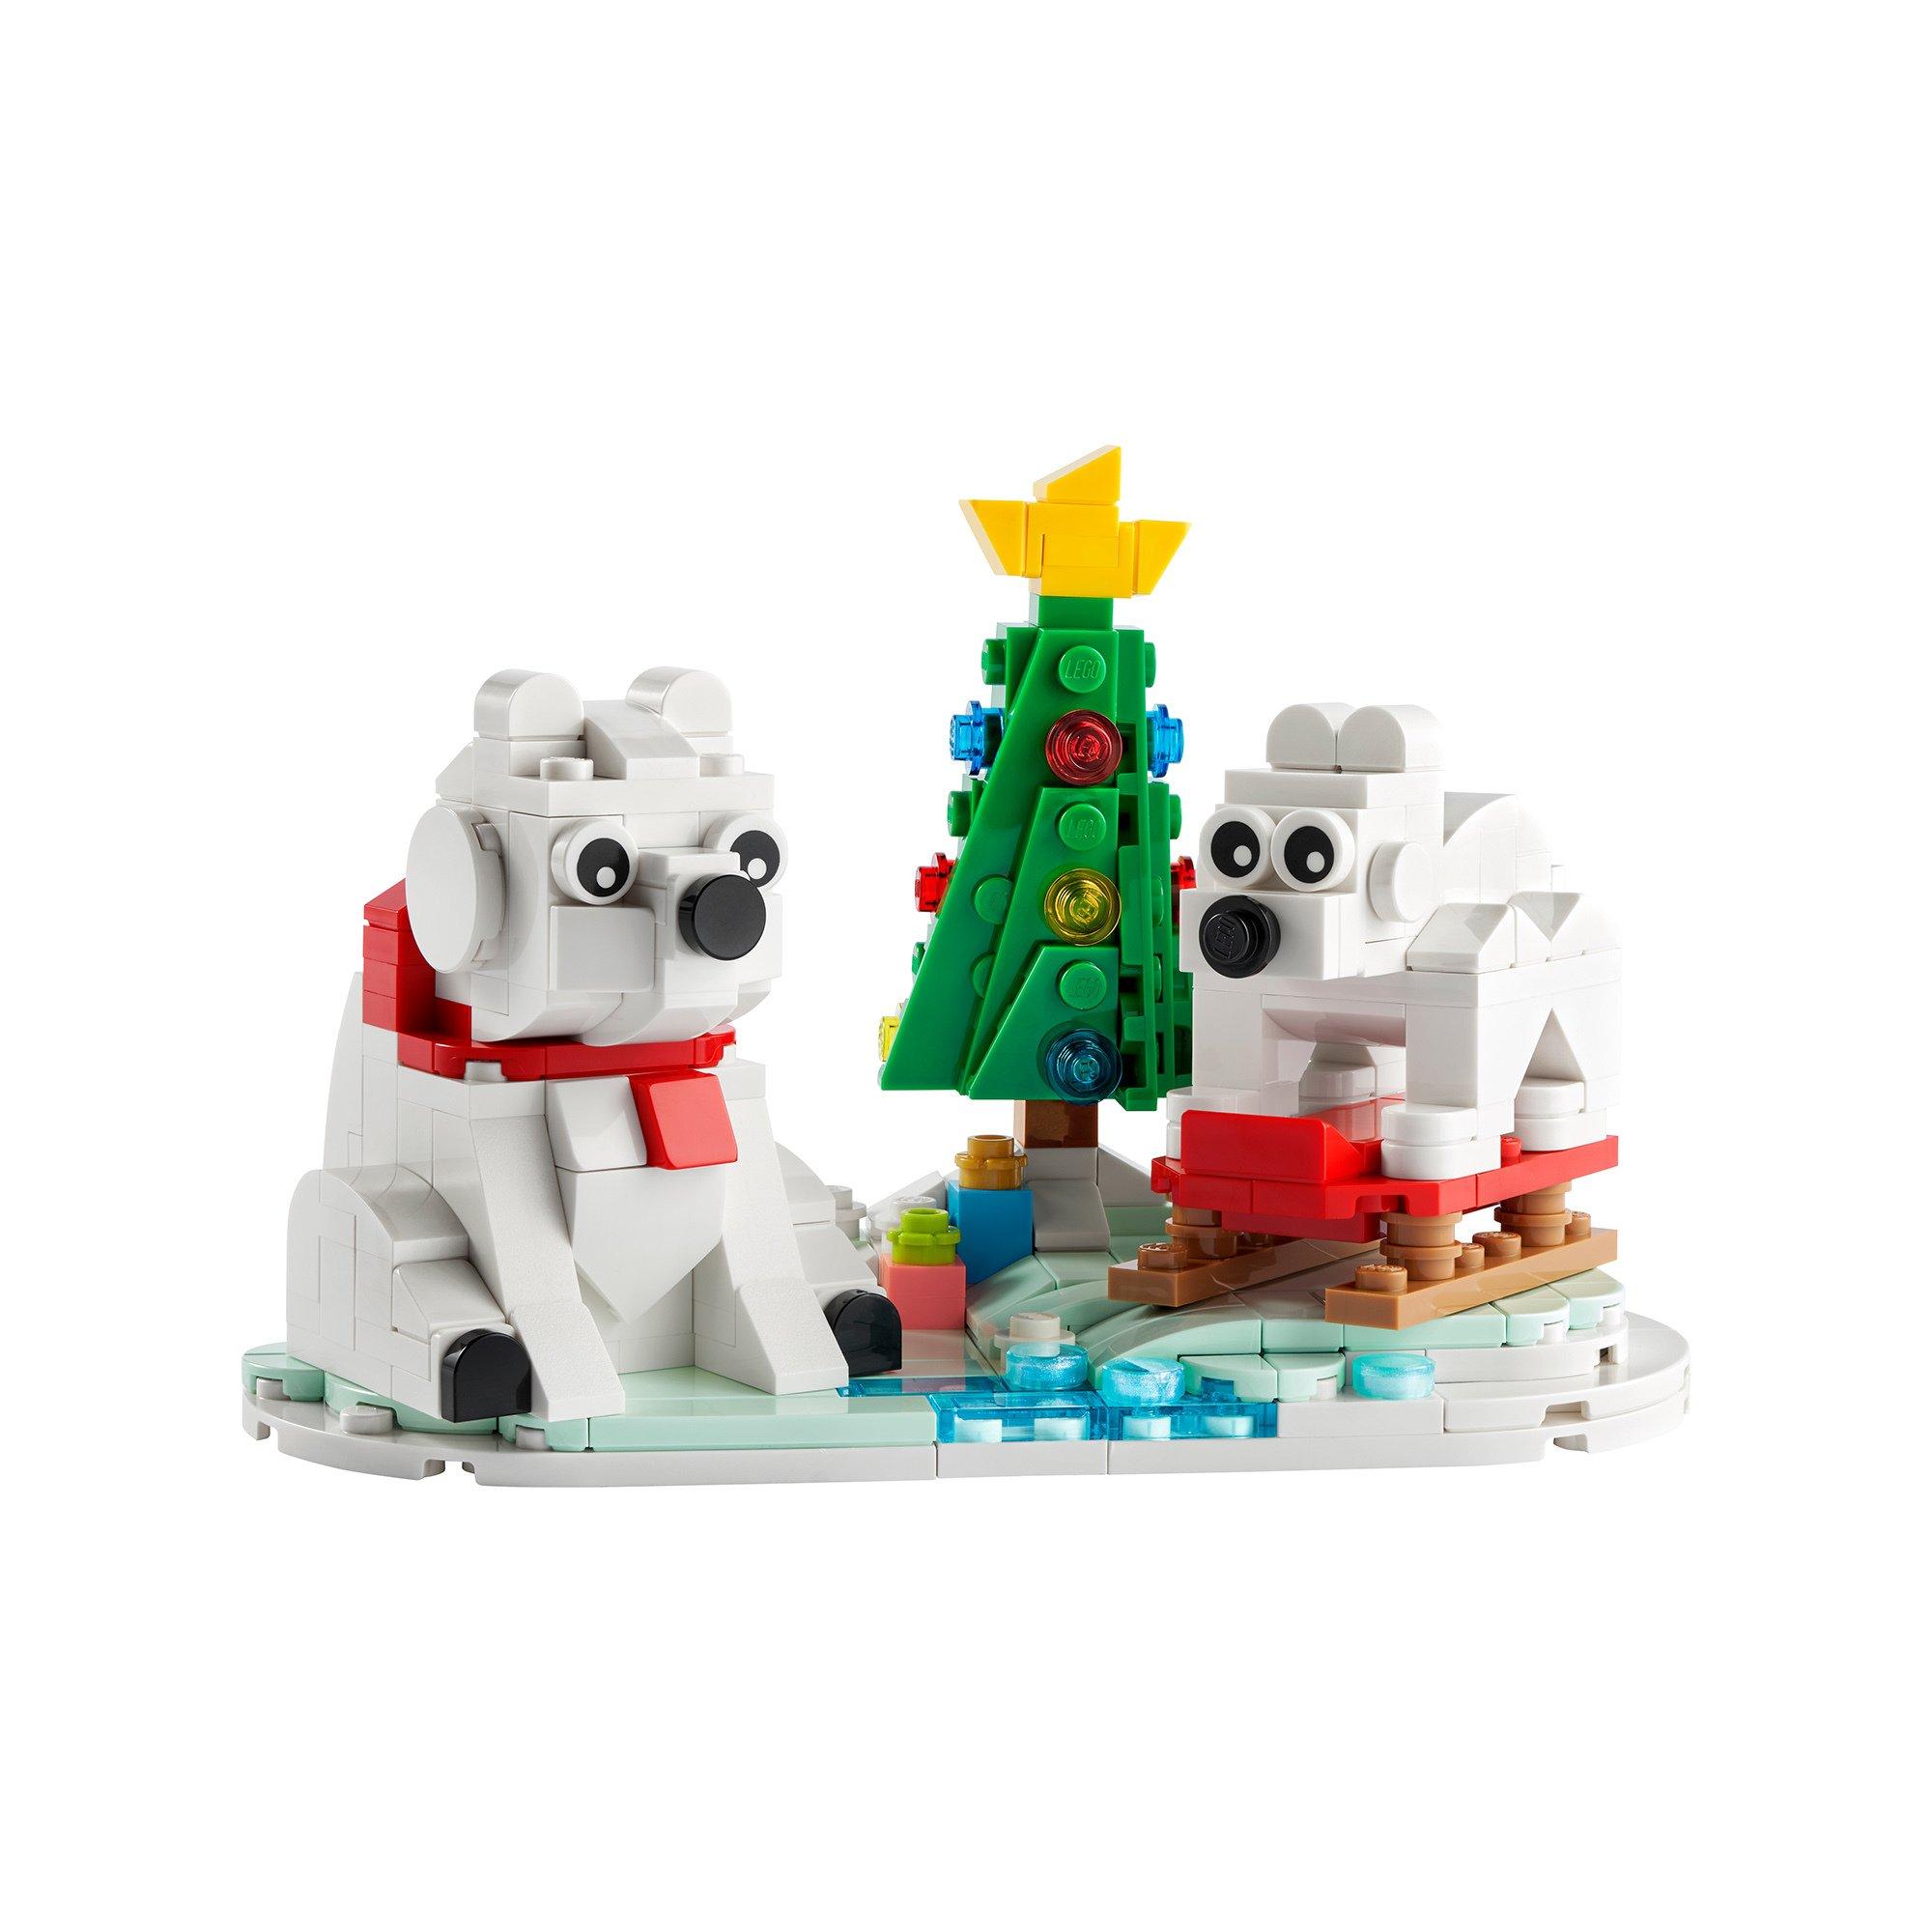 LEGO®  40571 Eisbären im Winter 